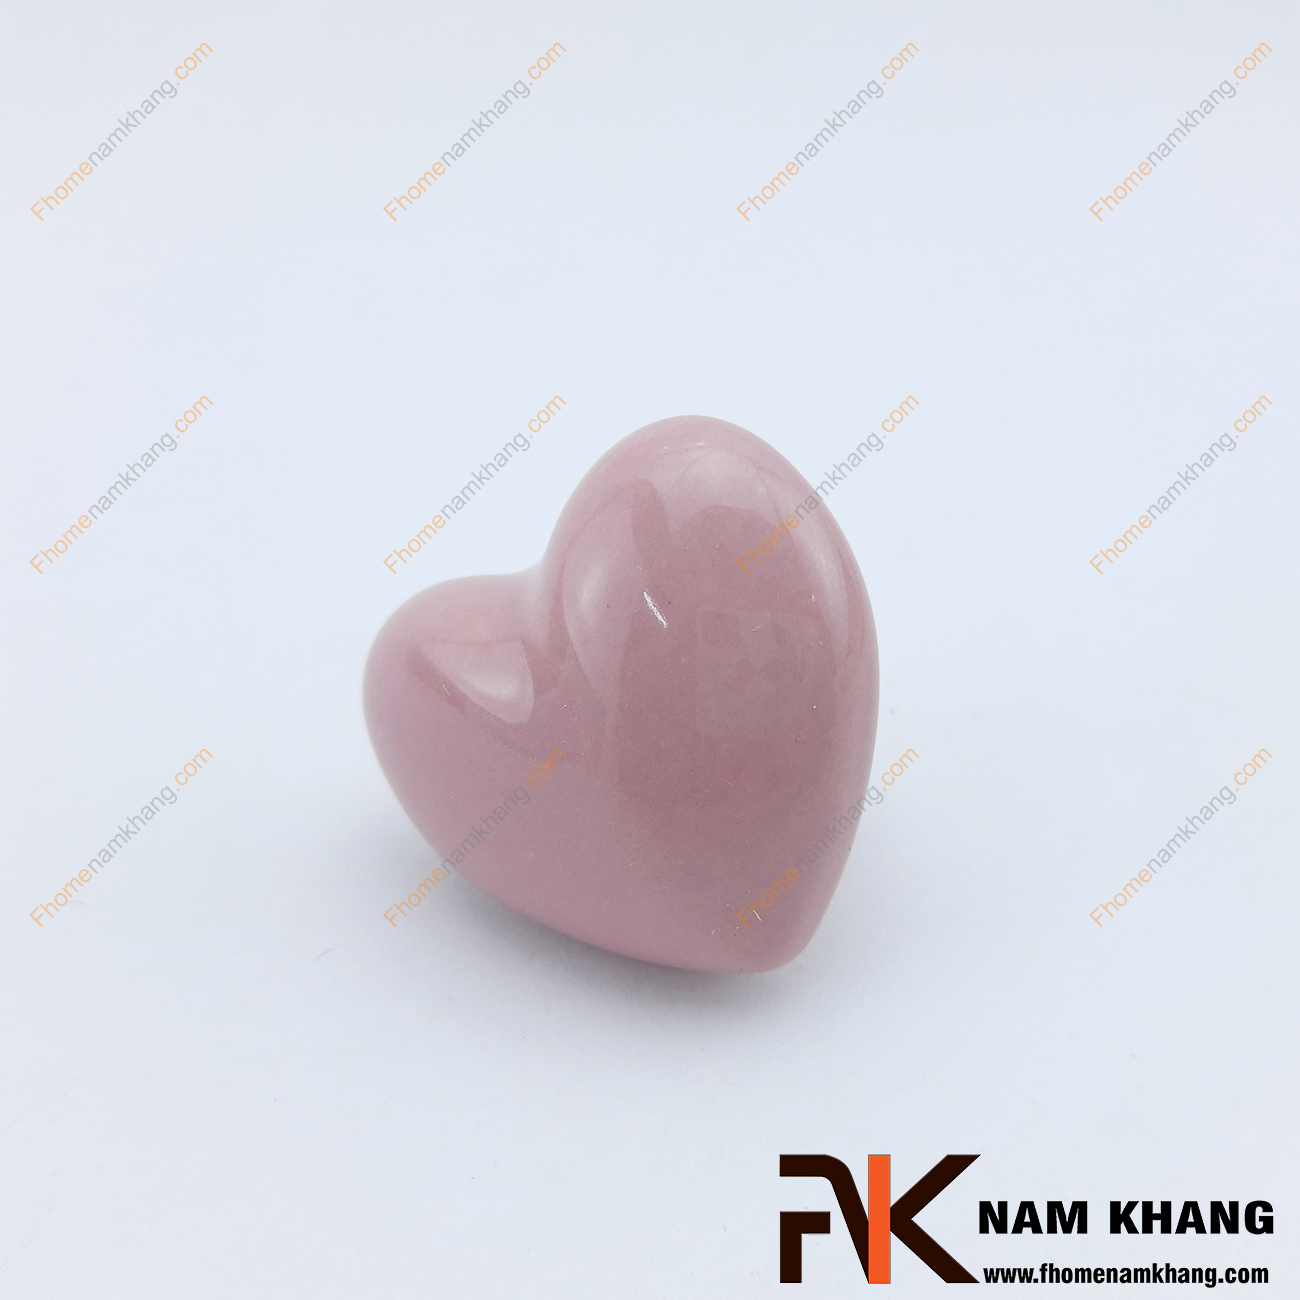 Núm cửa tủ bằng sứ hình trái tim NK394 là một dạng núm cửa tủ thuần sứ được sản xuất từ chất liệu sứ cao cấp có độ bền cao